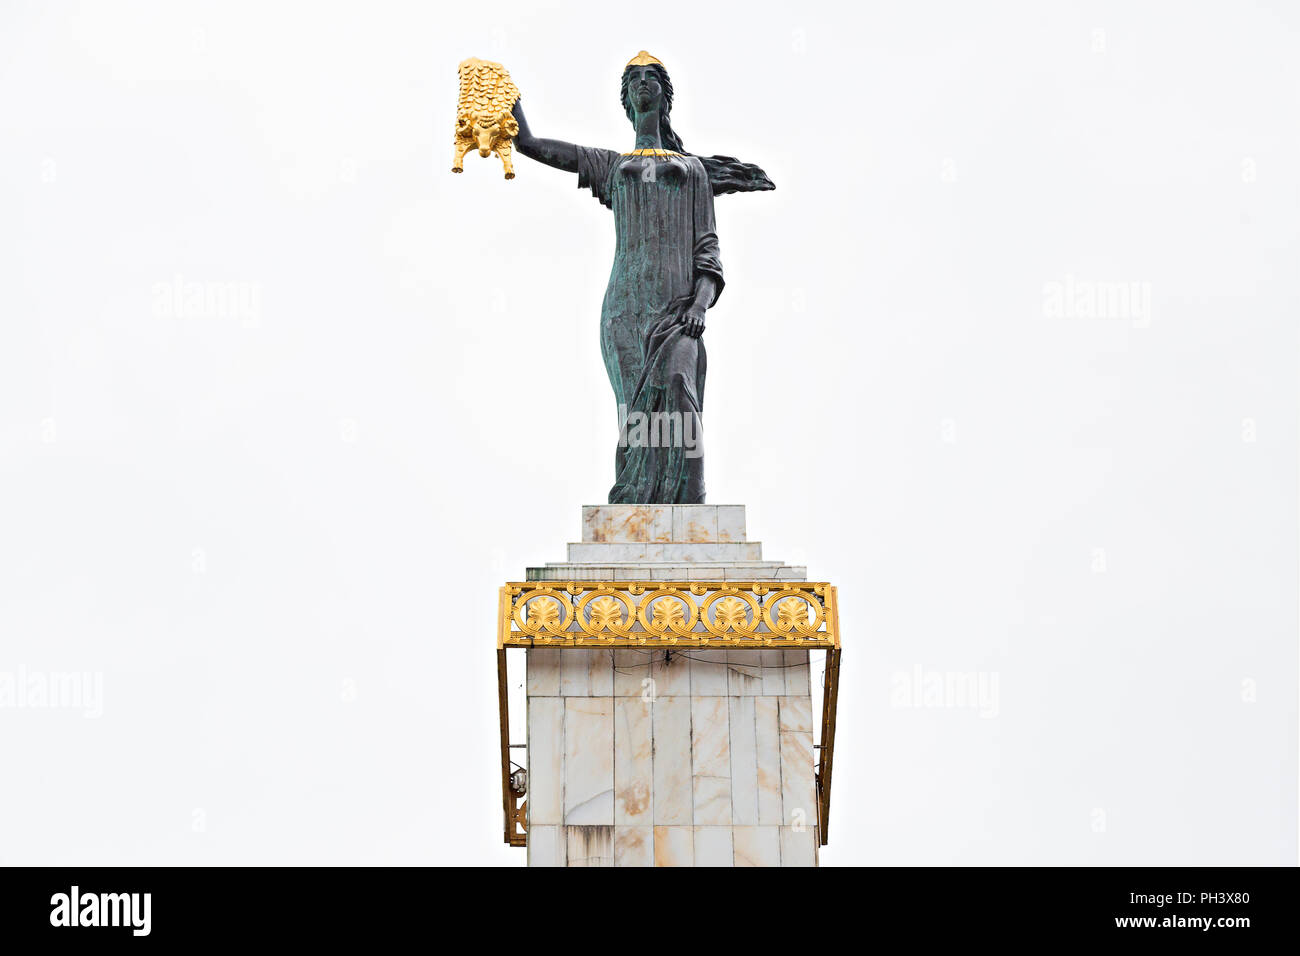 Statue von Medea auf dem Europaplatz, die Medea, Frau von Jason in der griechischen Mythologie, mit dem Goldenen Vlies, in Batumi, Georgia, darstellt Stockfoto